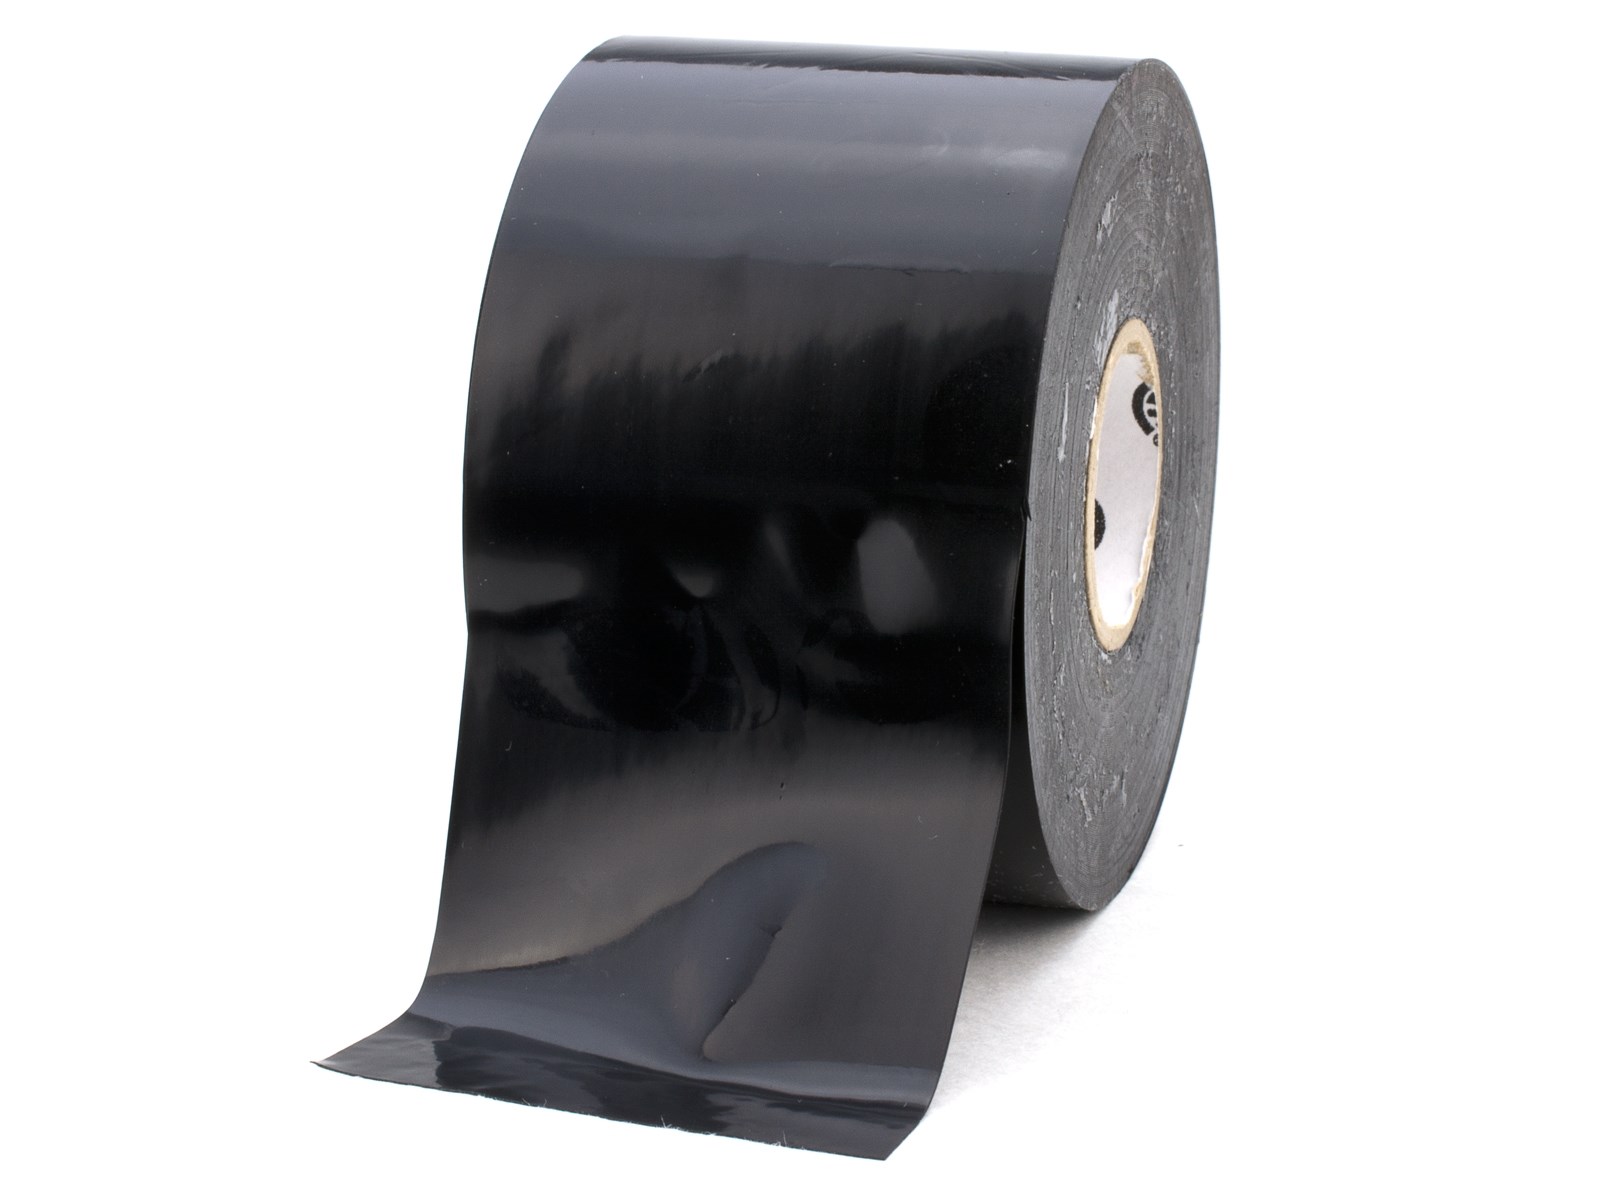 PVC insulation tape, Black tape, Black Adhesive tape